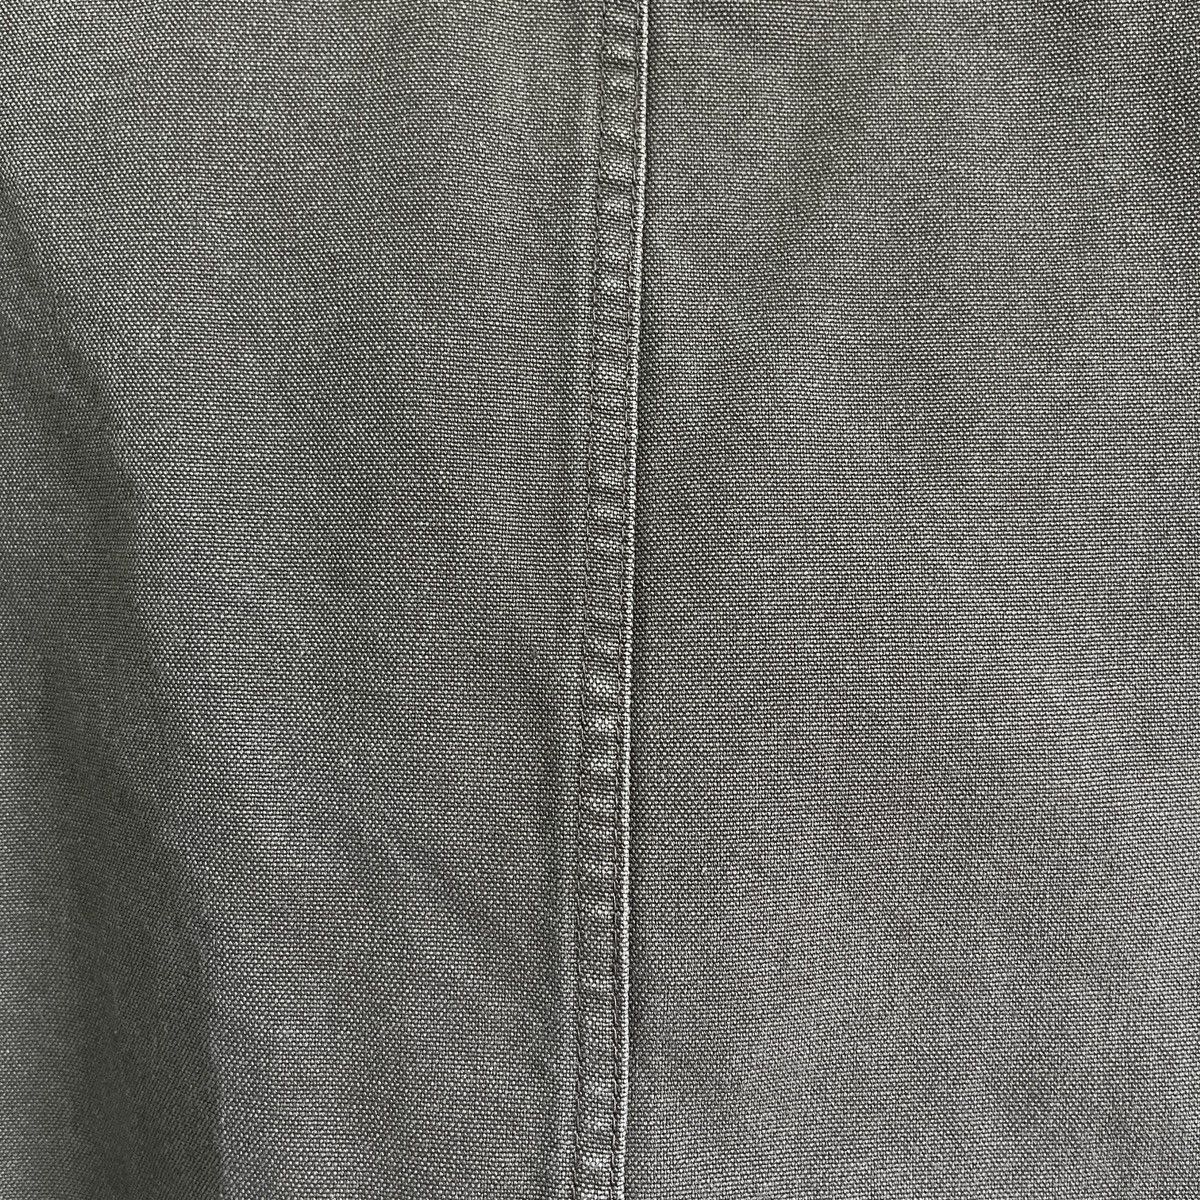 Uniqlo Chore Jacket Japan Size XL - 14